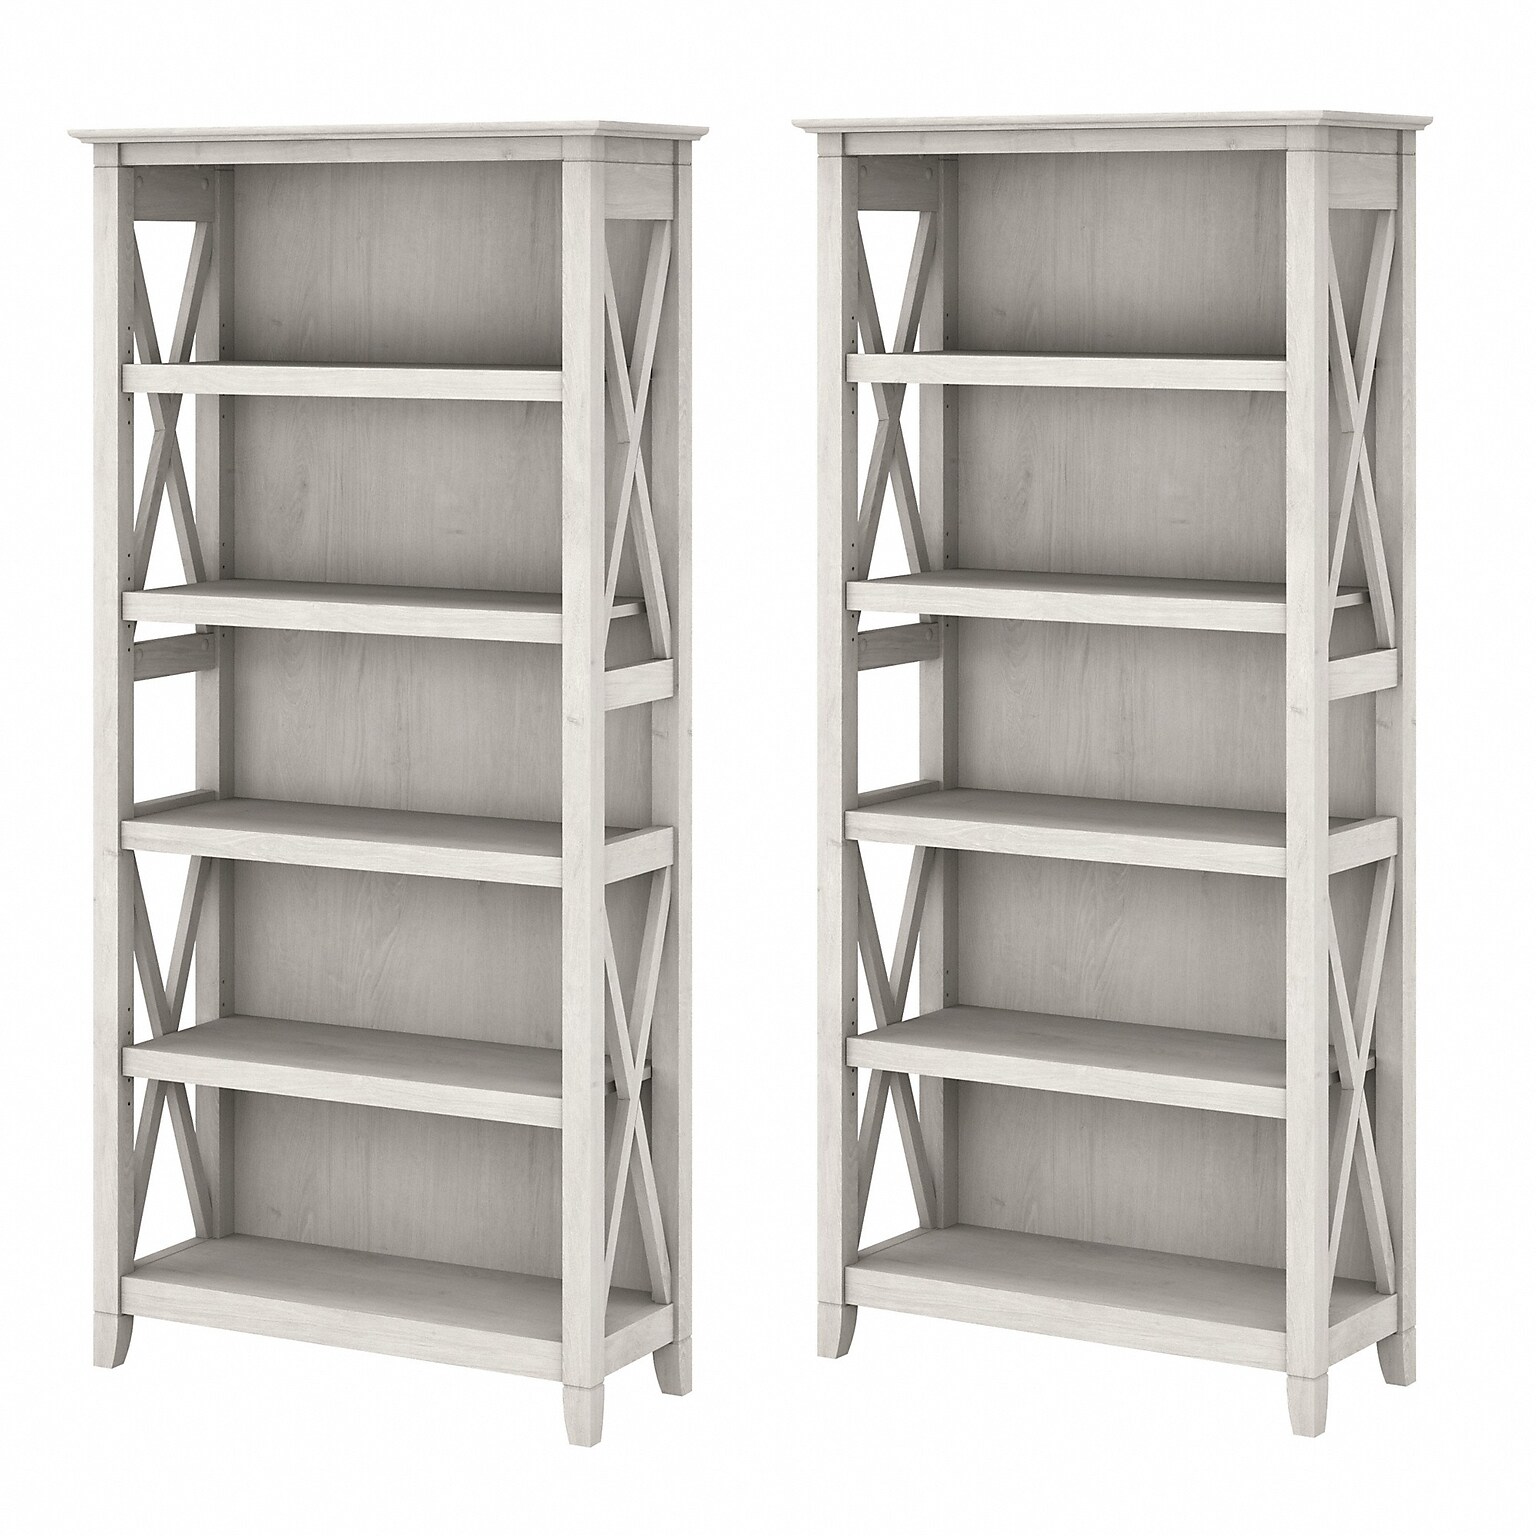 Bush Furniture Key West 66H 5-Shelf Bookcase with Adjustable Shelves, Linen White Oak Laminated Wood, 2/Set (KWS046LW)